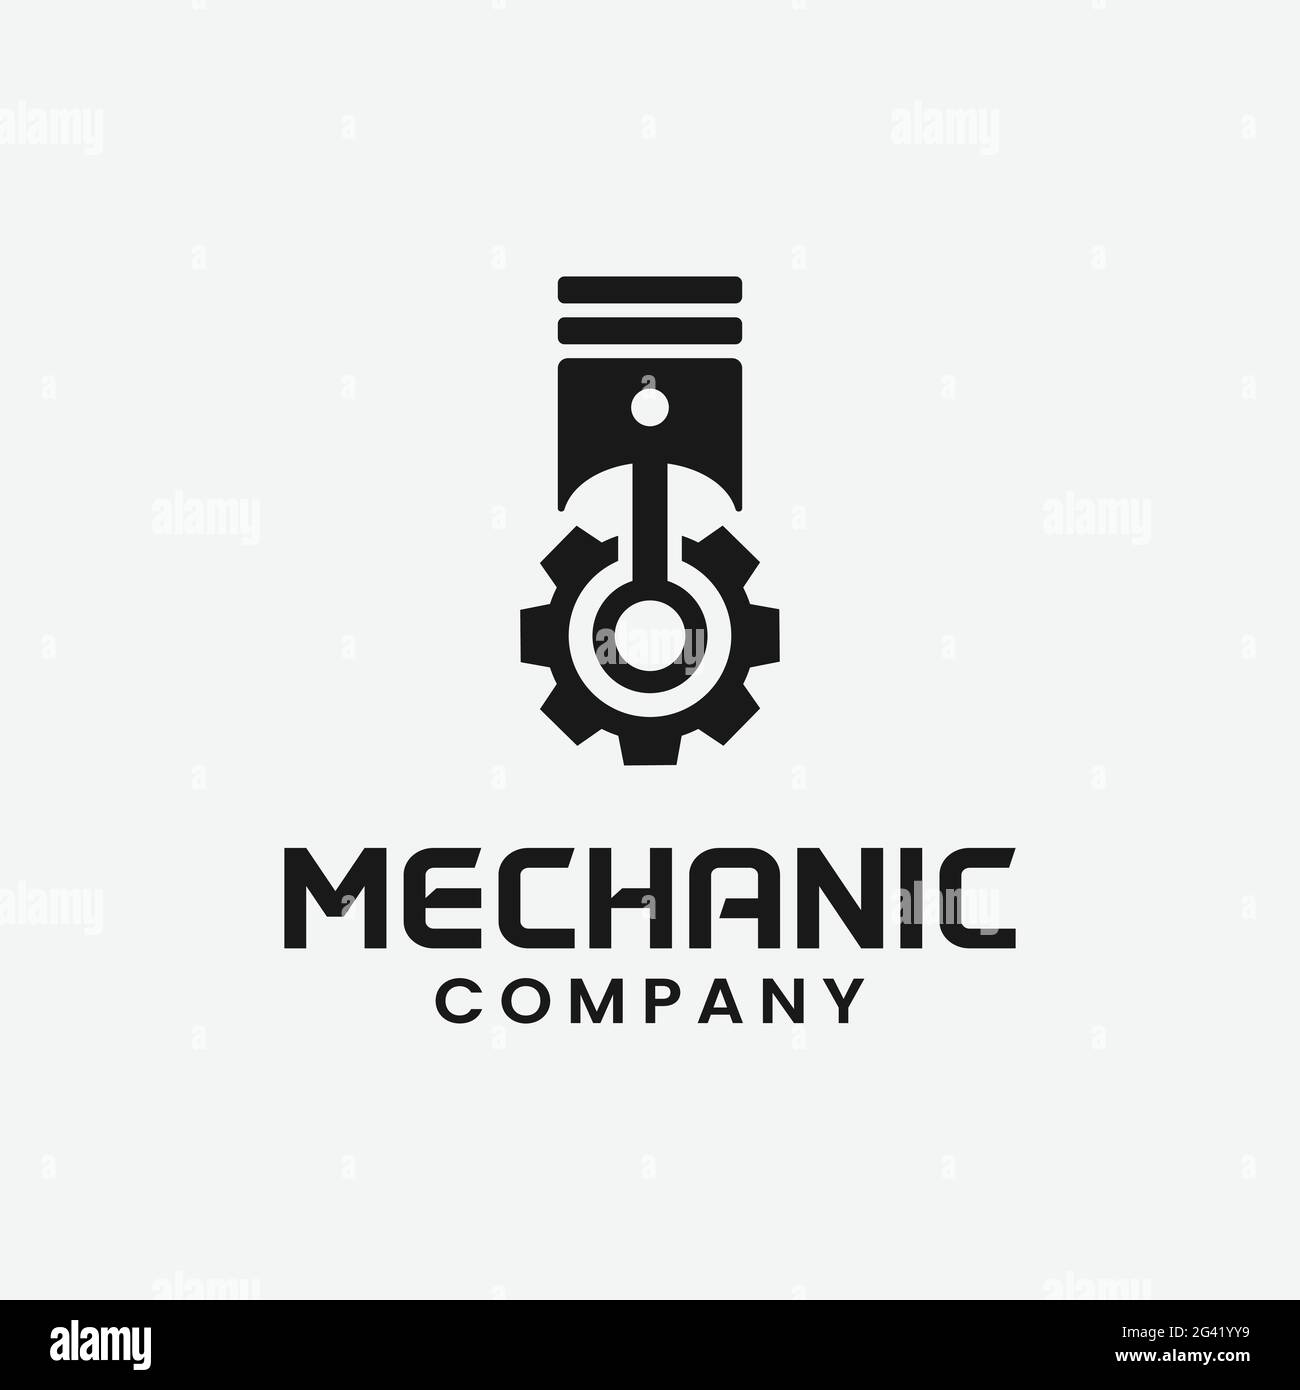 Motorreparatur-mechaniker-logo, service, wartung, auto- und motorrad-reparaturwerkstatt-logos  und c